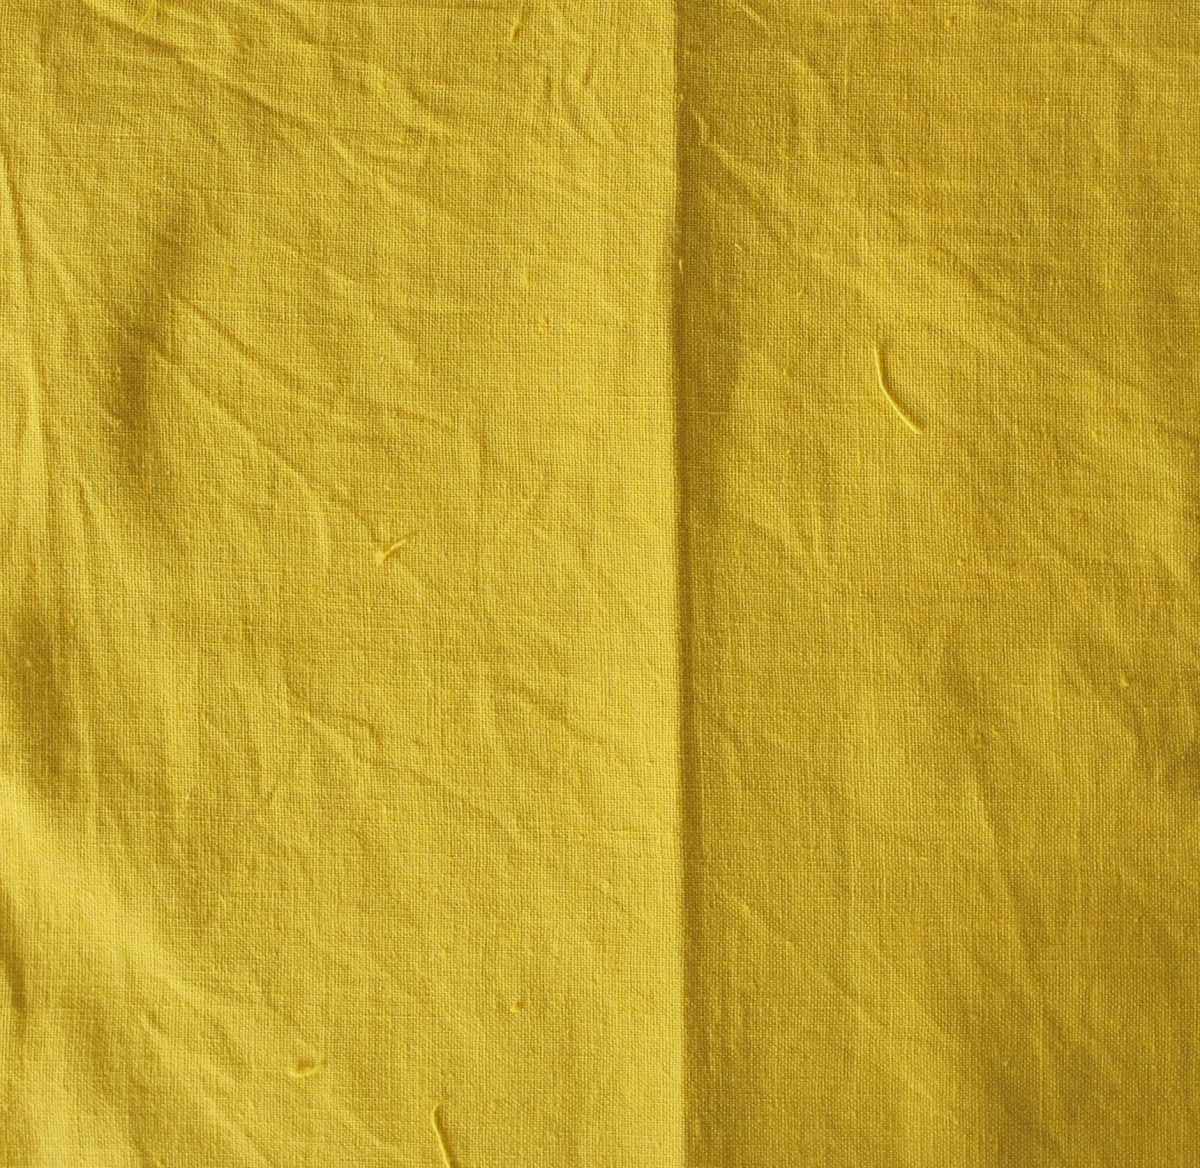 زرد مستقیم 12 برای رنگرزی کاغذ